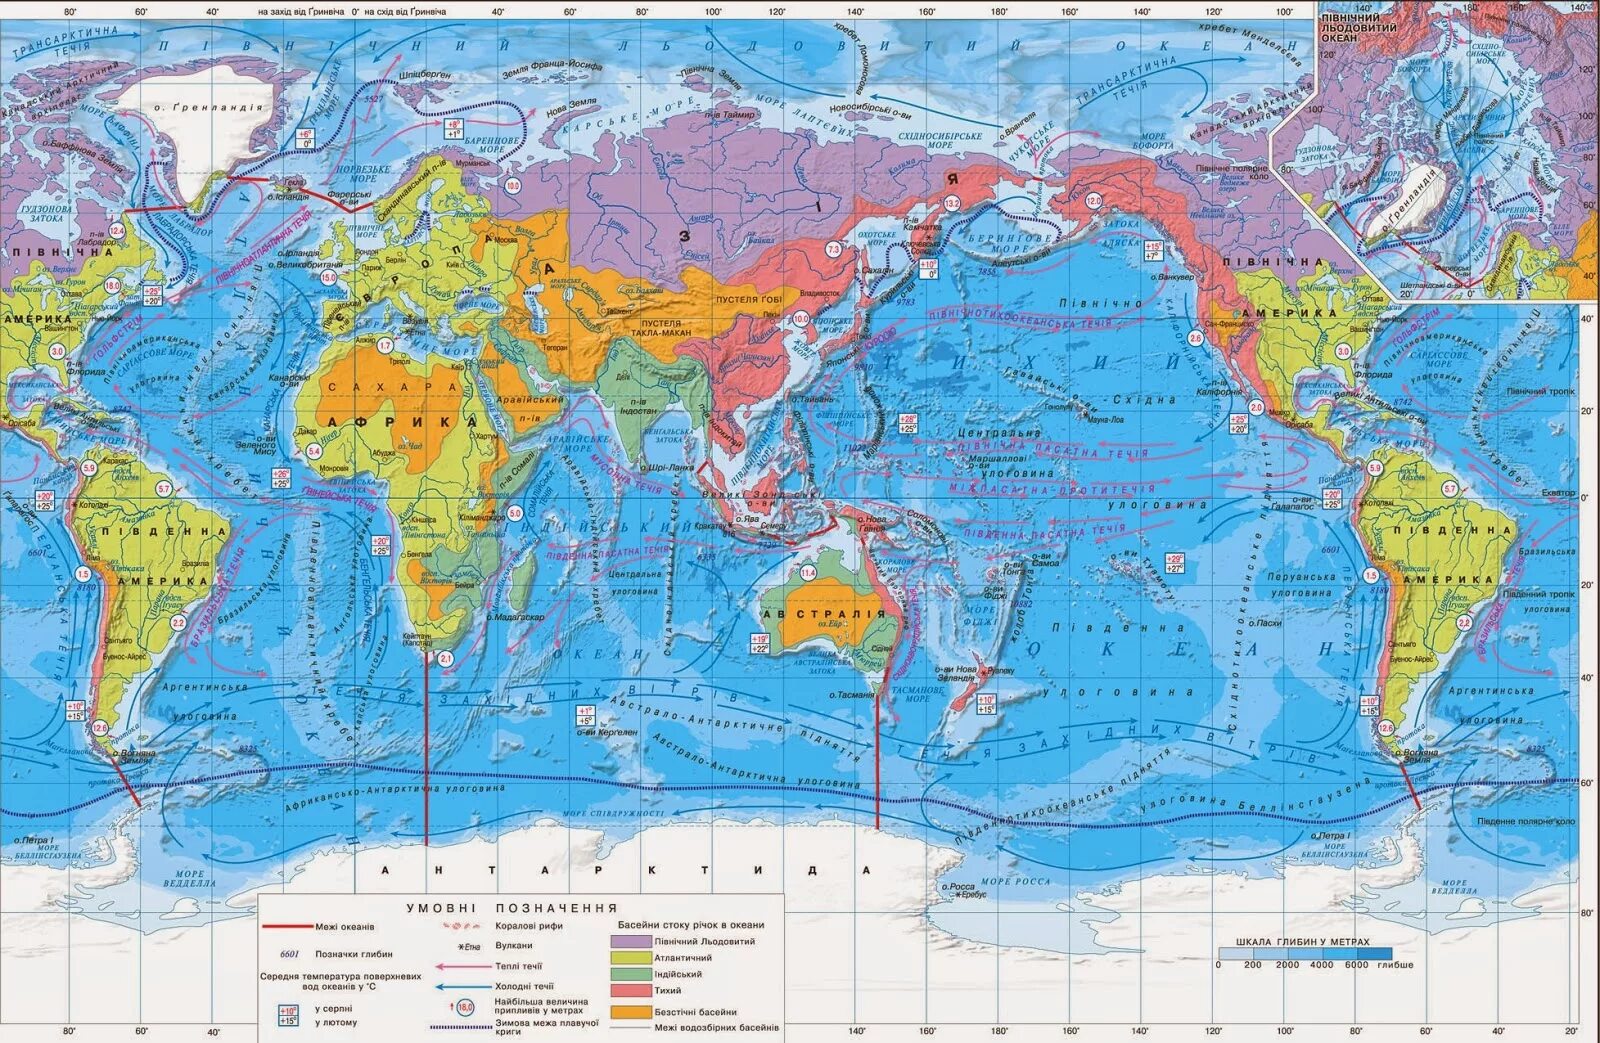 Моря мирового океана на карте. Проливы Тихого океана на карте. Карта мировоготокеана. Местоположение океанов